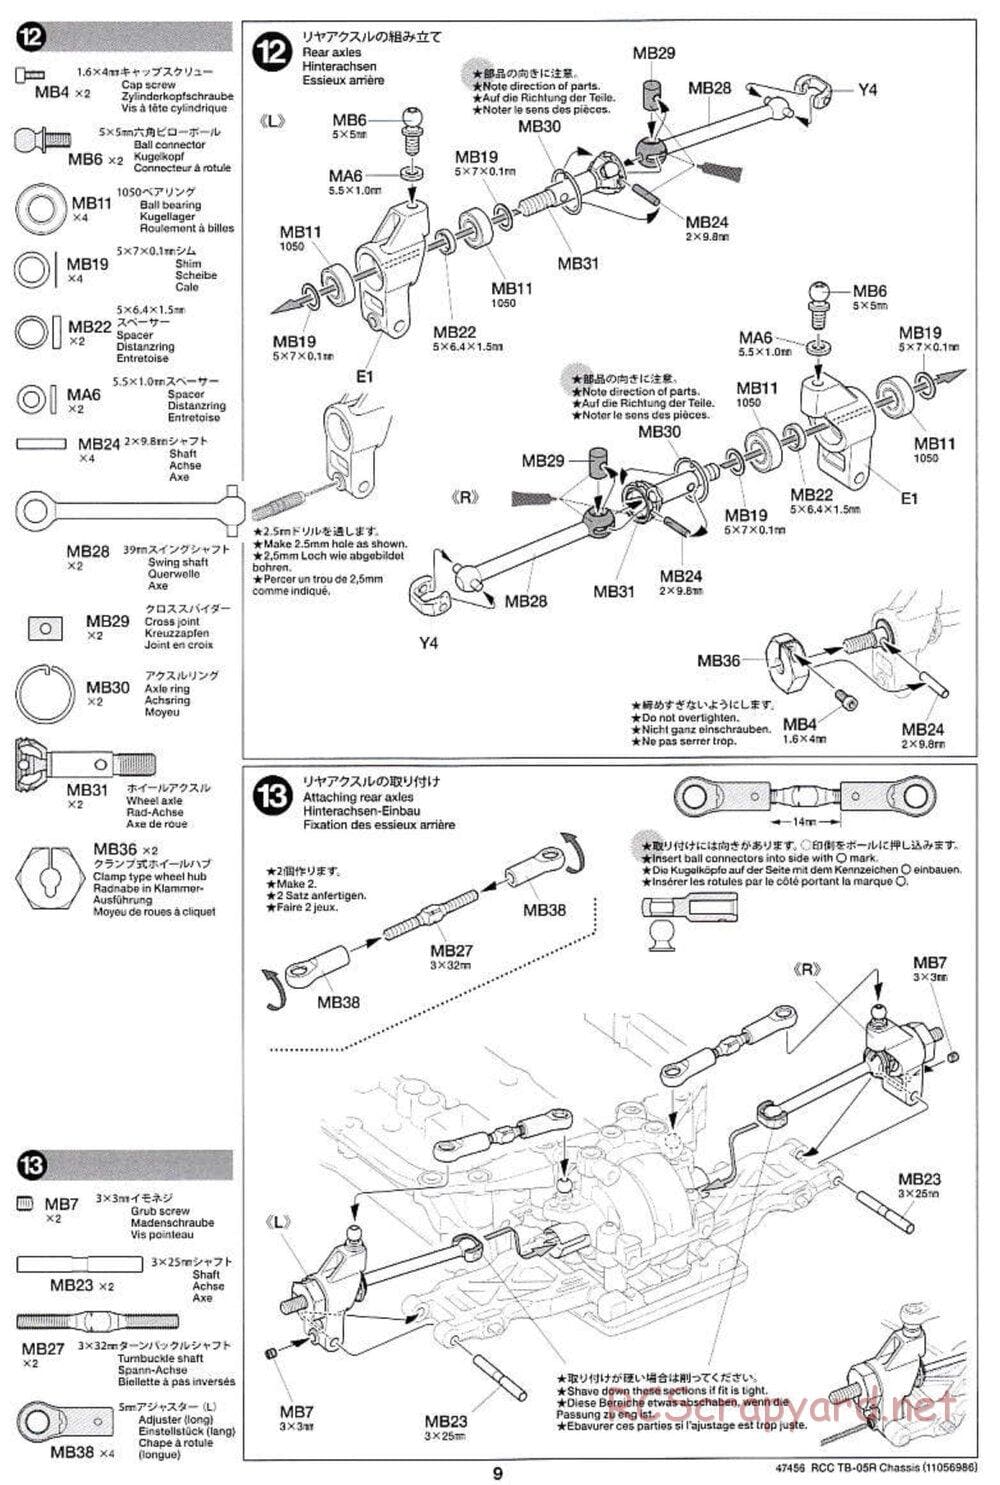 Tamiya - TB-05R Chassis - Manual - Page 9